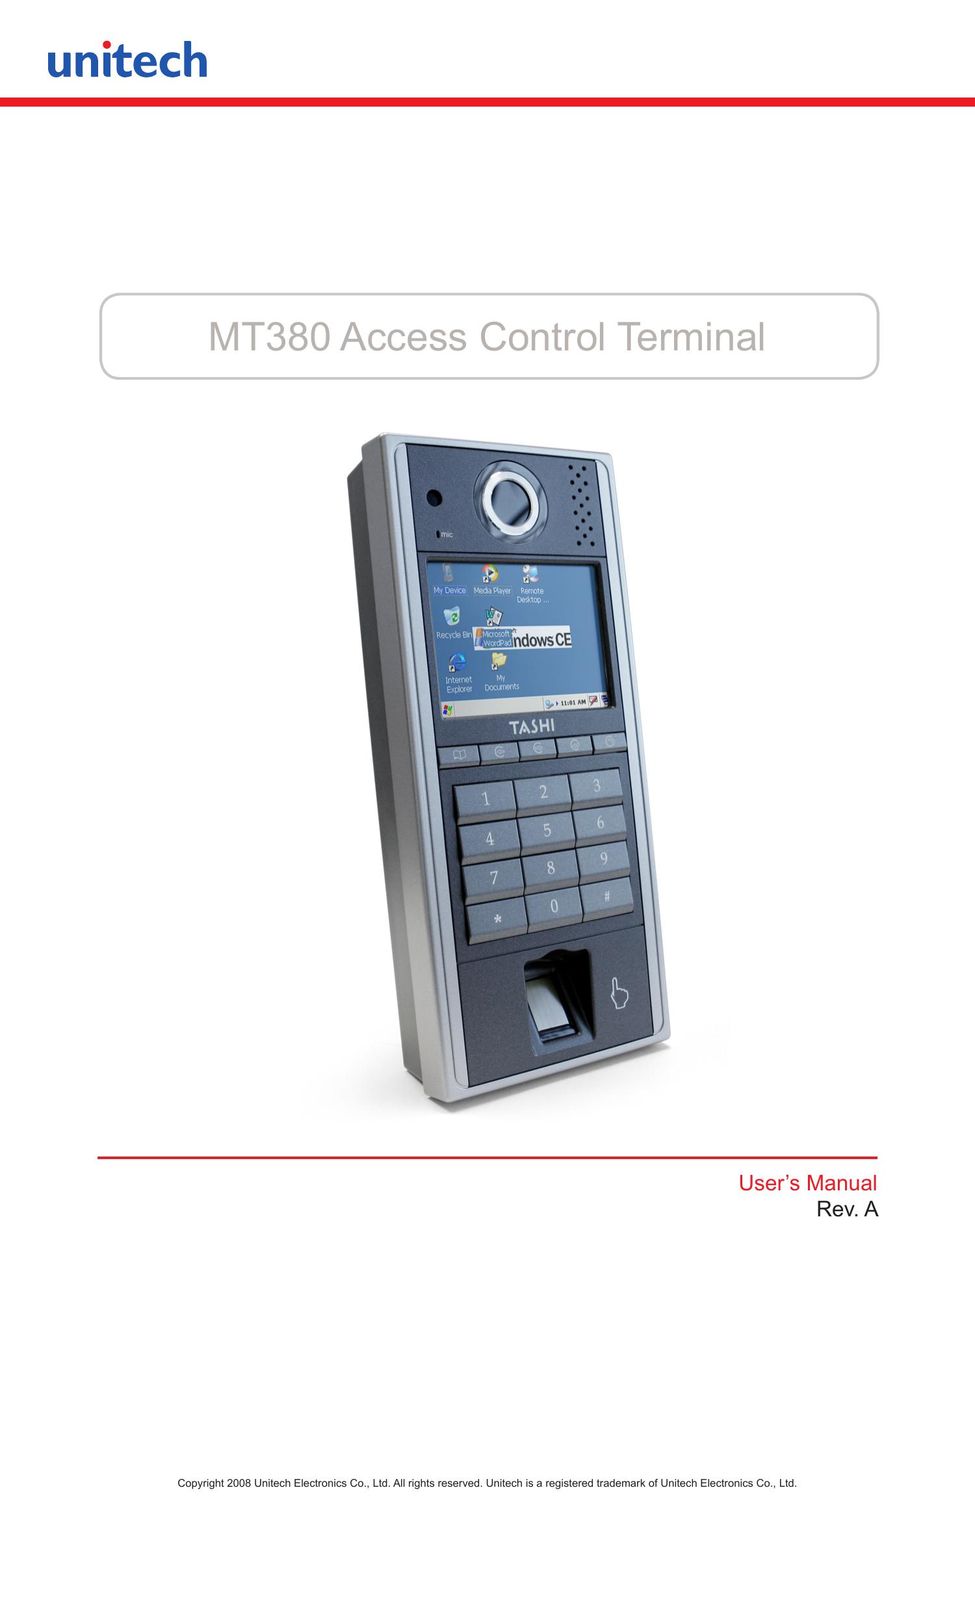 Unitech MT380 Credit Card Machine User Manual